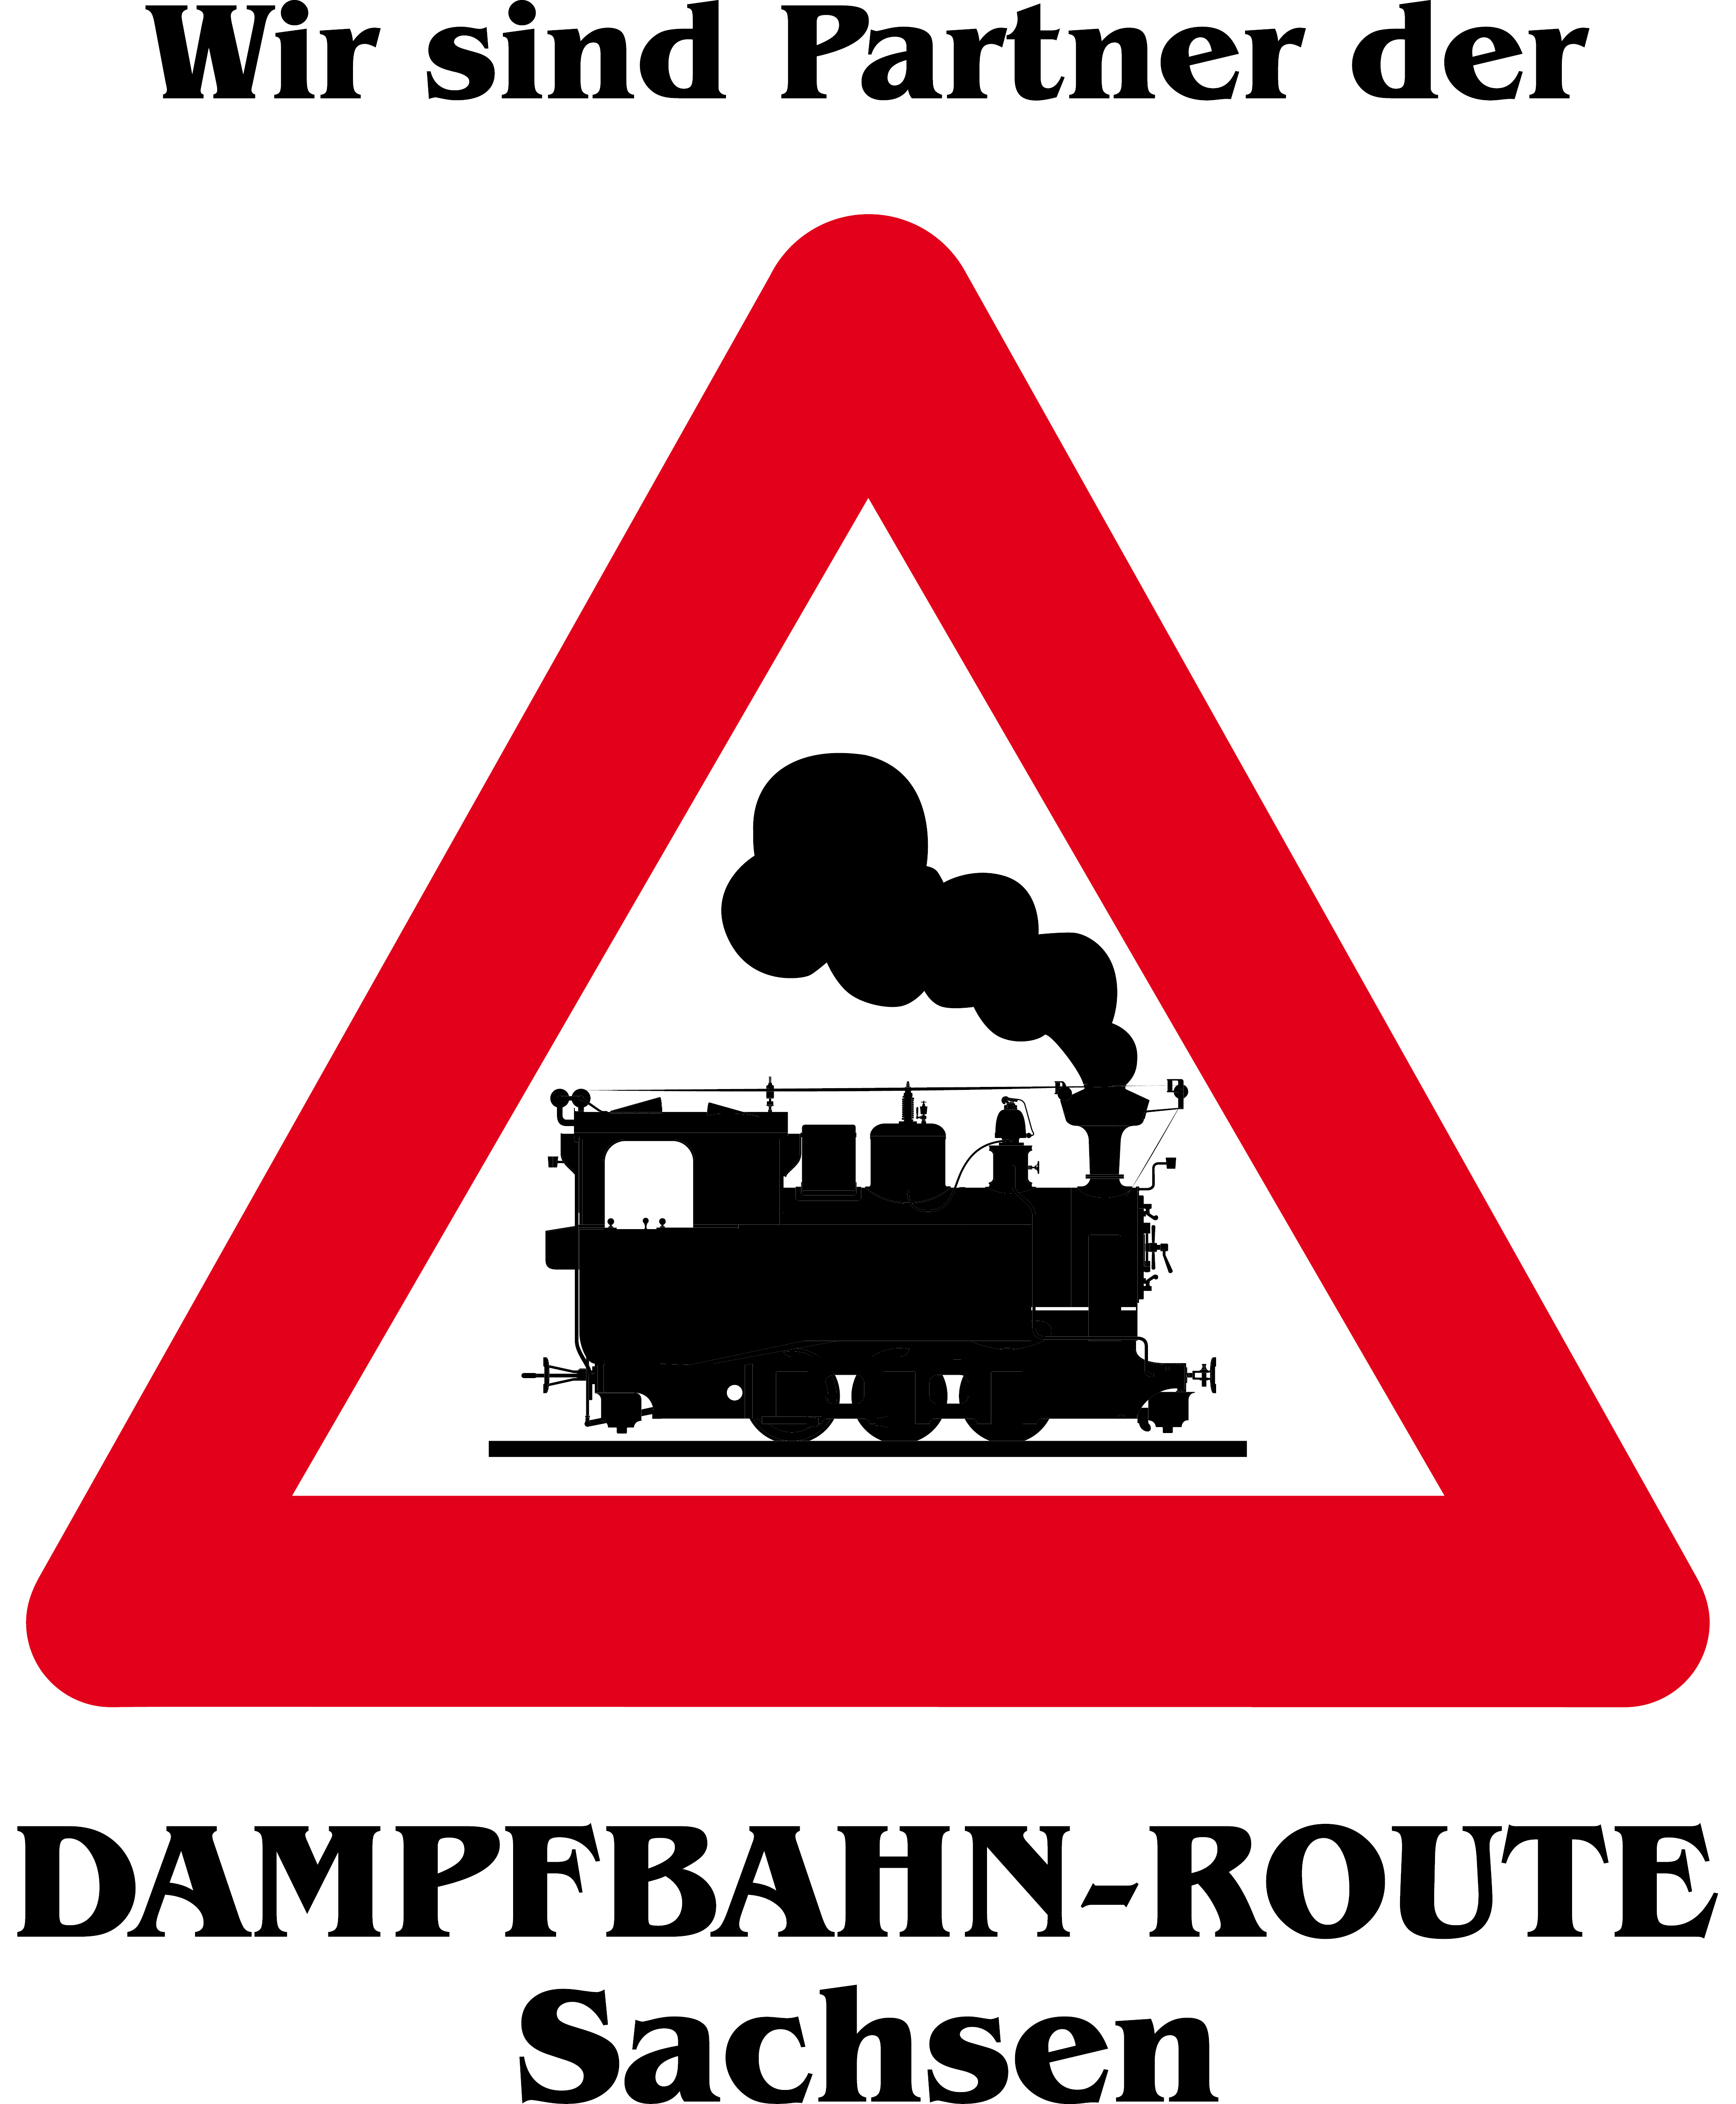 Partner der Dampfbahn-Route Sachsen